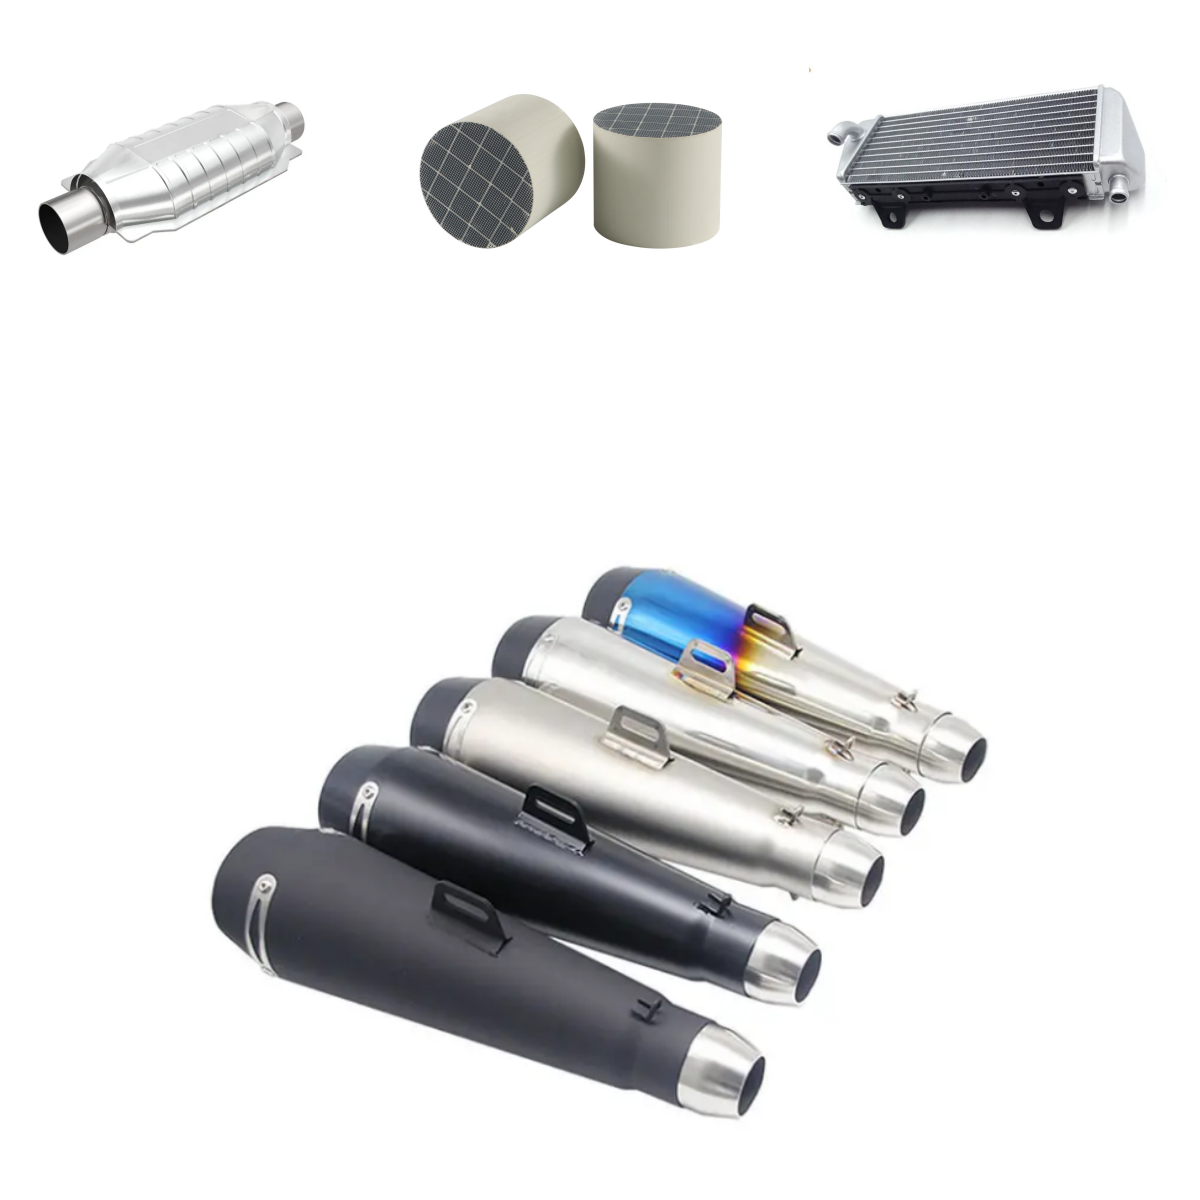 Accipe Custom Low Price Steel Automobile Parts Exhaust Titanium Muffler System